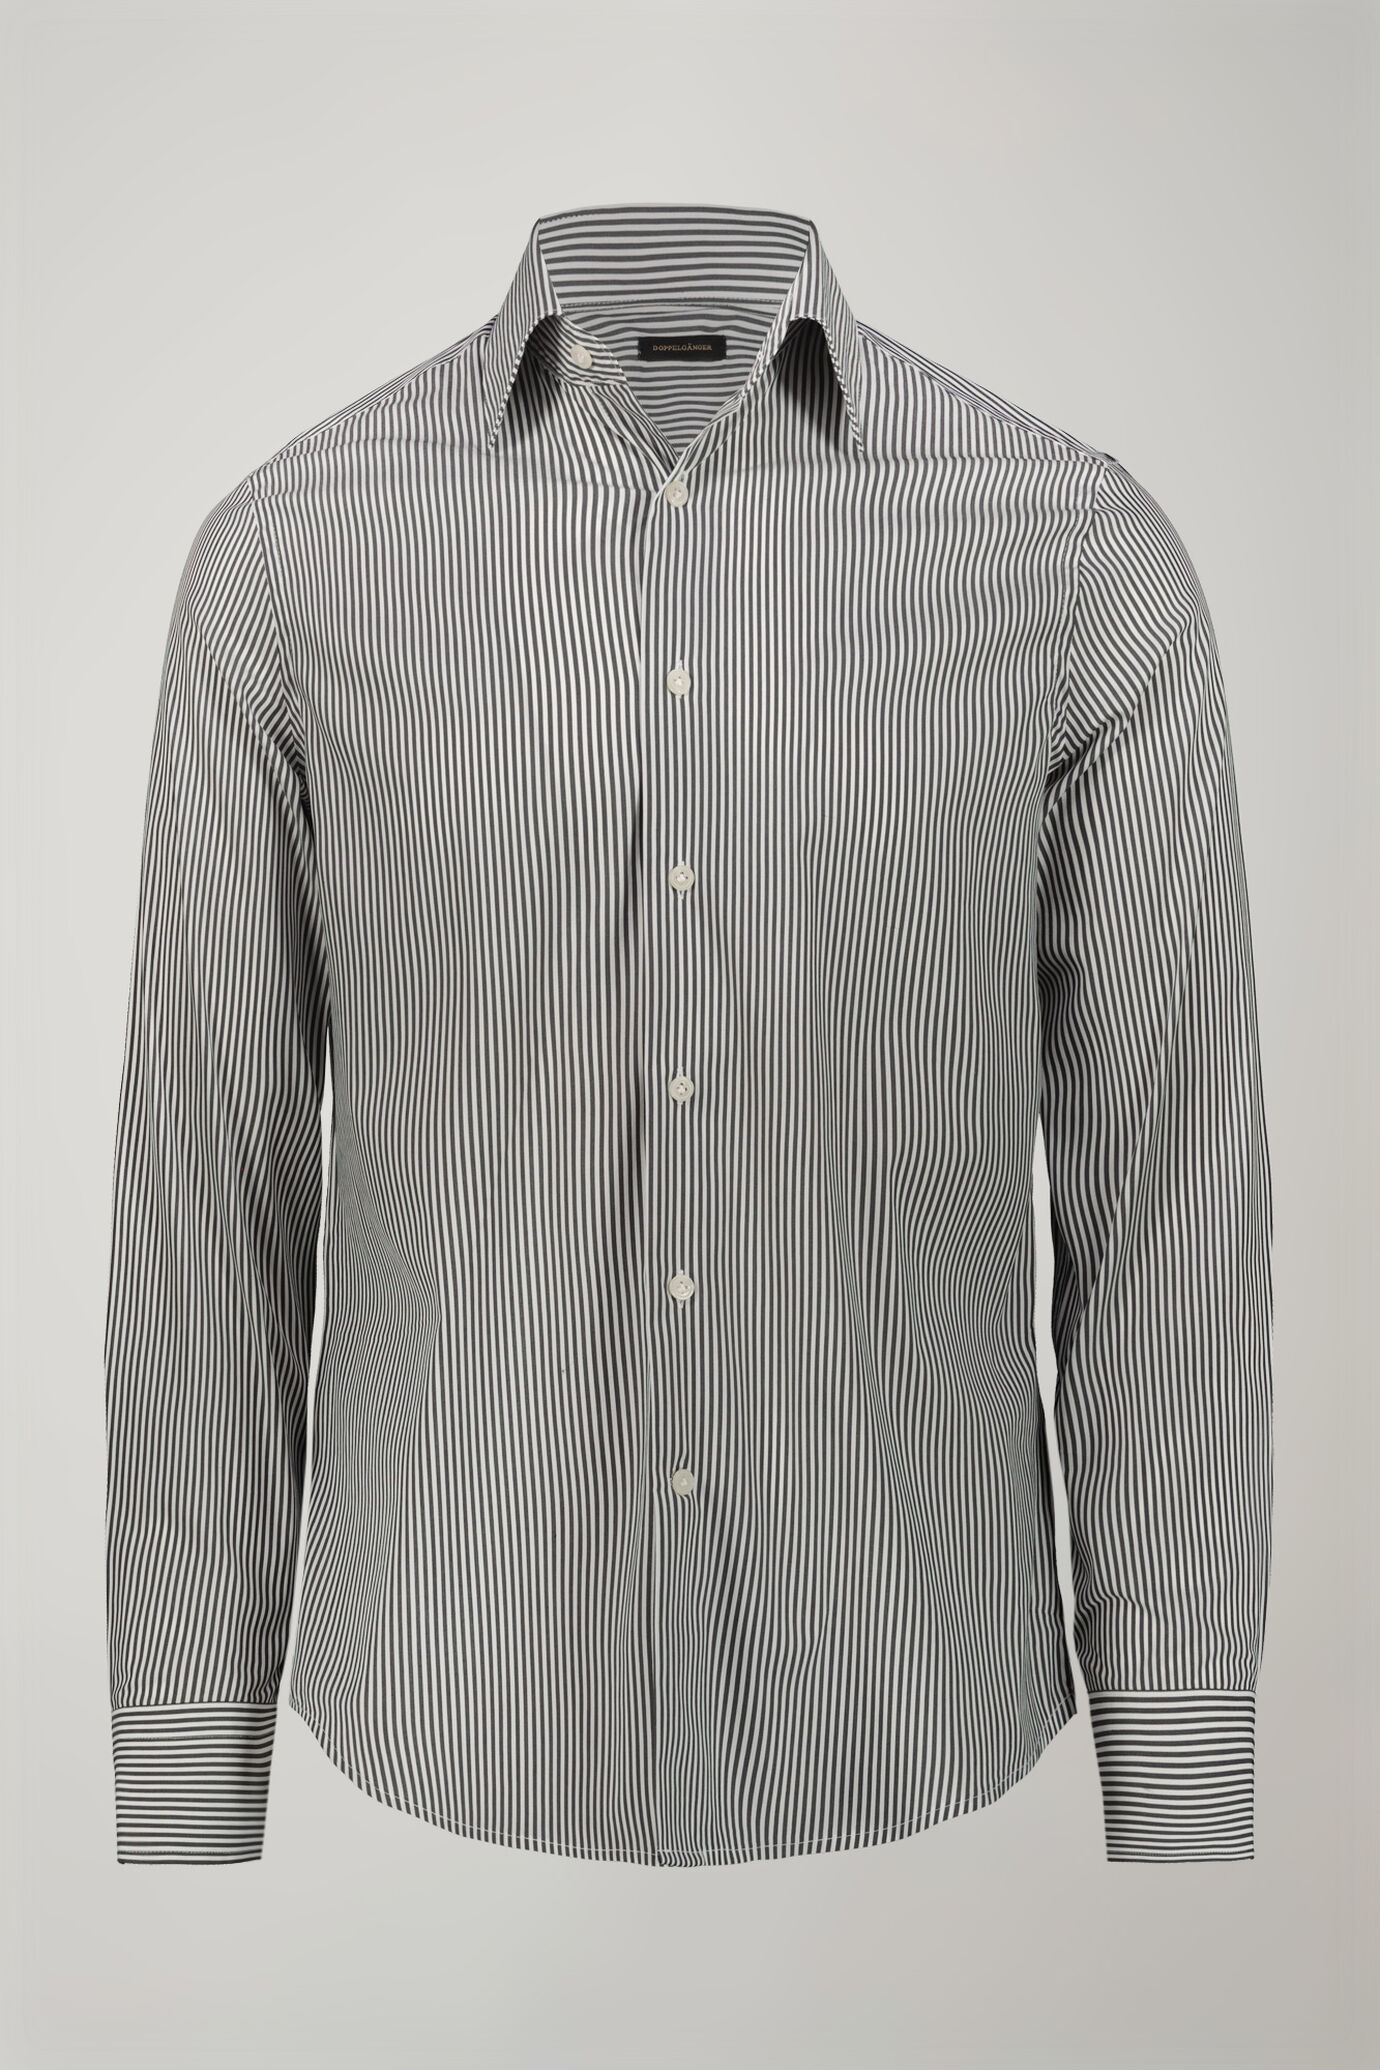 Camicia tecnica uomo collo classico tessuto nylon stampato a righe regular fit image number 5